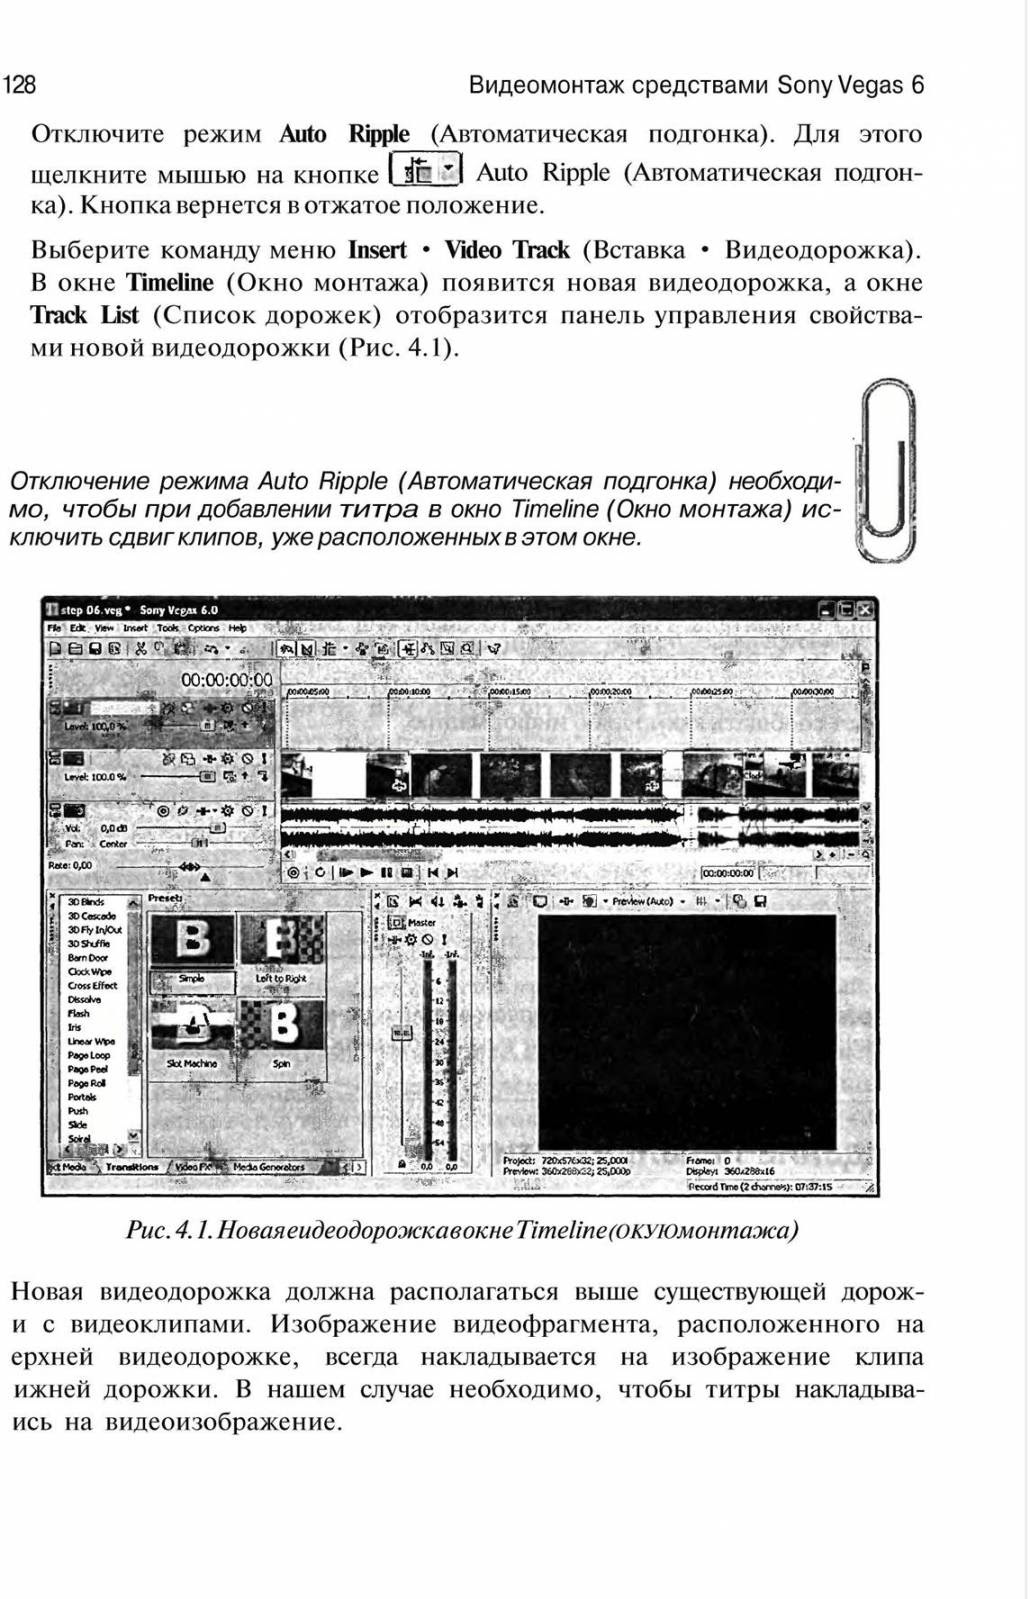 http://redaktori-uroki.3dn.ru/_ph/13/785713661.jpg